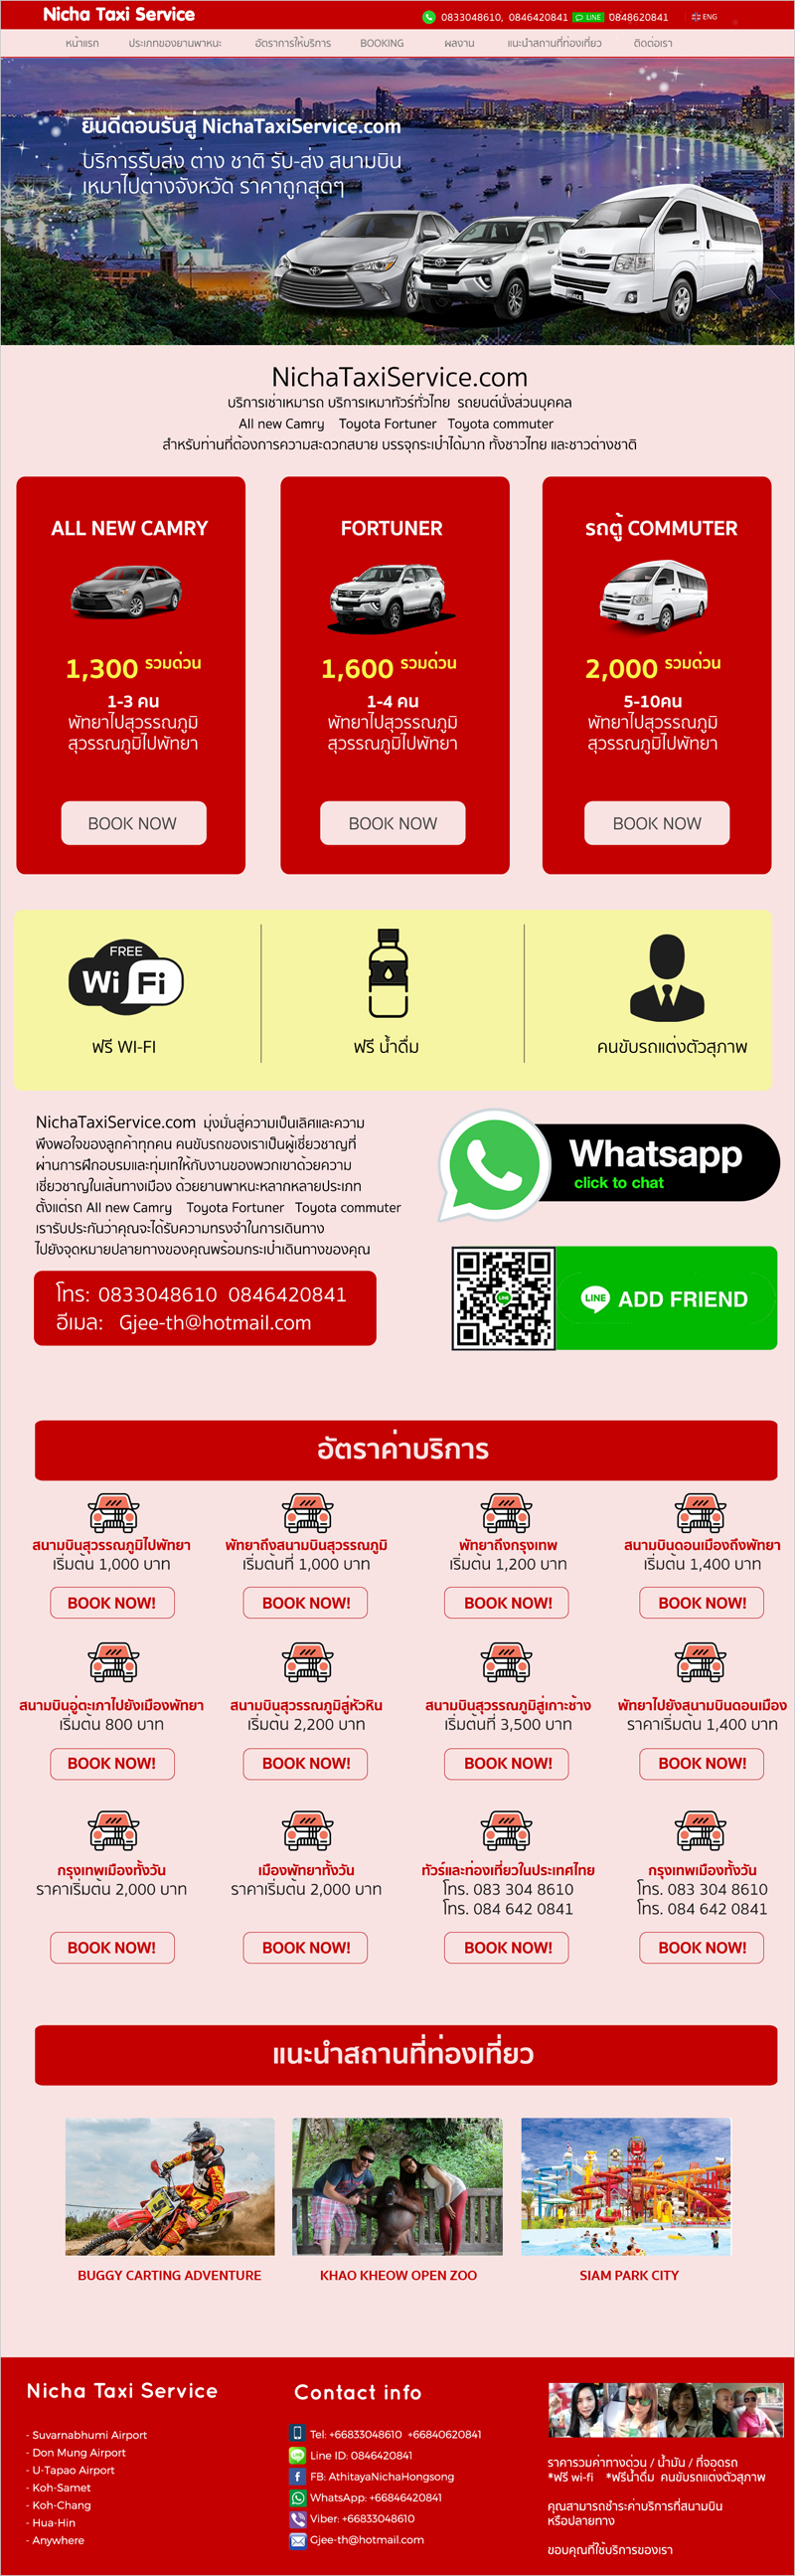 บ้านทำเว็บ บริการรับทำเว็บไซต์บริการเช่าเหมารถ เว็บไซต์บริการเหมาทัวร์ทั่วไทย โดยเว็บนี้เป็นเว็บ 2 ภาษา บริการทั้งชาวไทย และชาวต่างชาติ